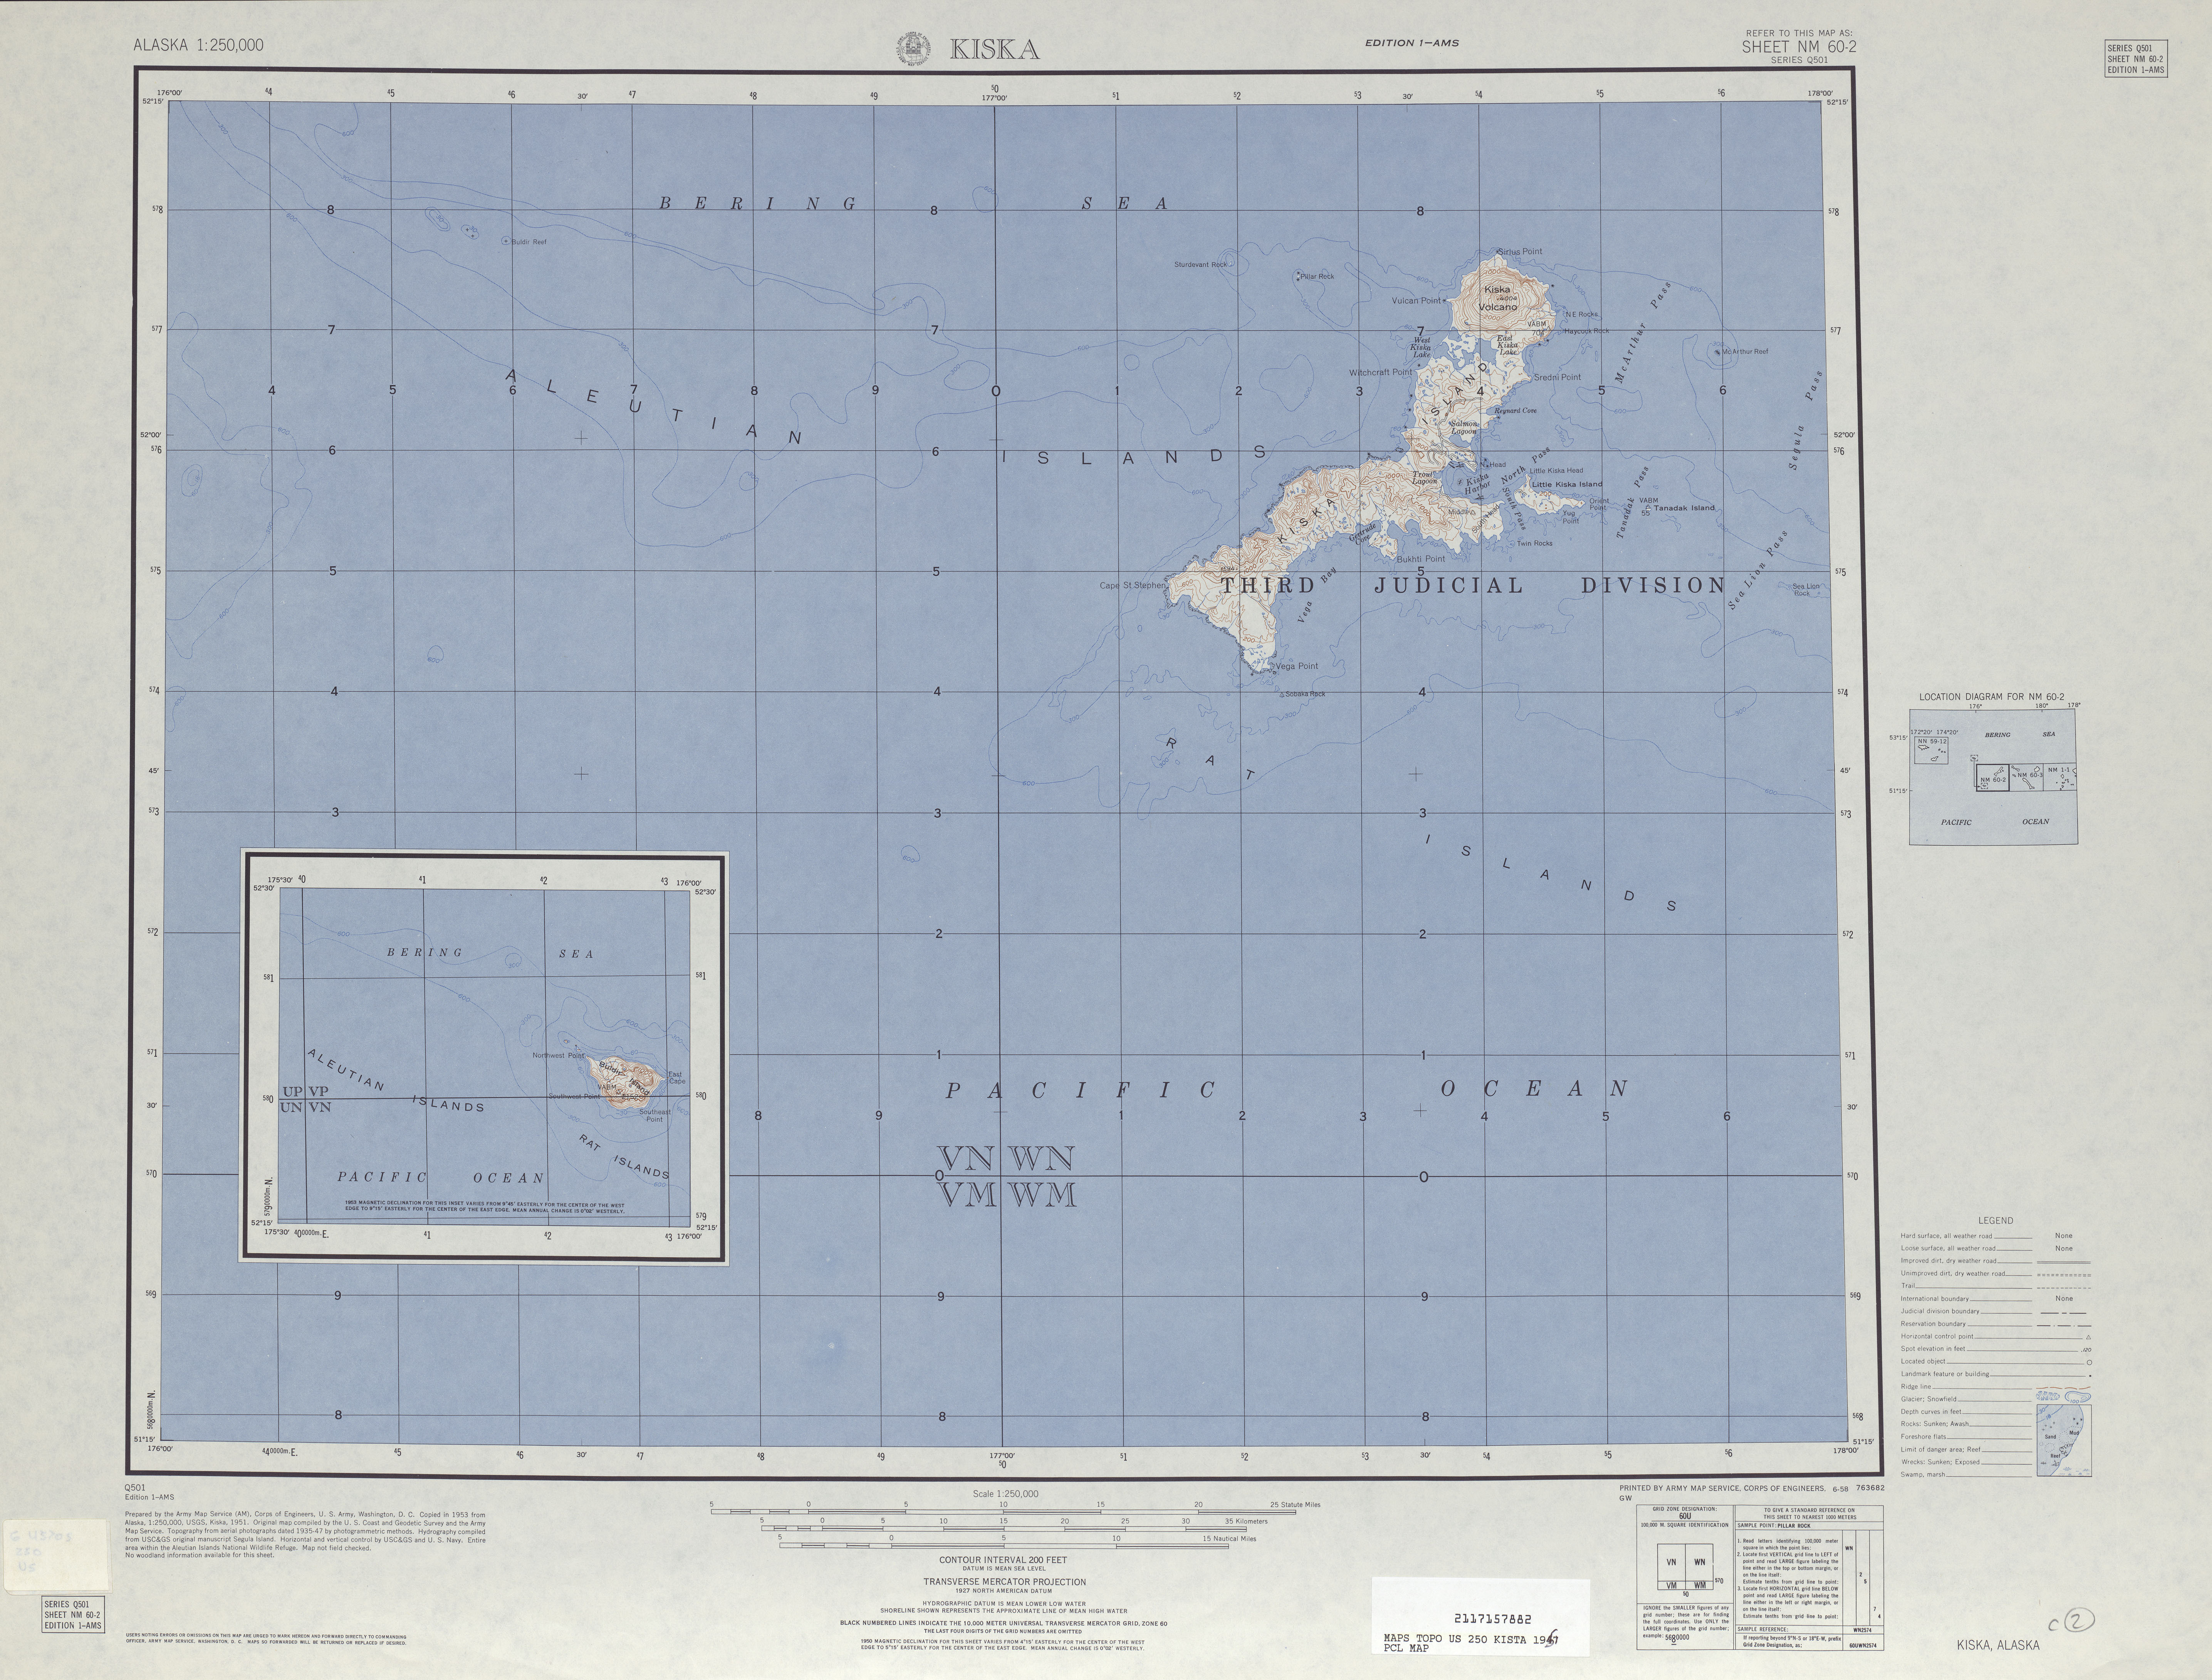 Hoja Kiska del Mapa Topográfico de los Estados Unidos 1951